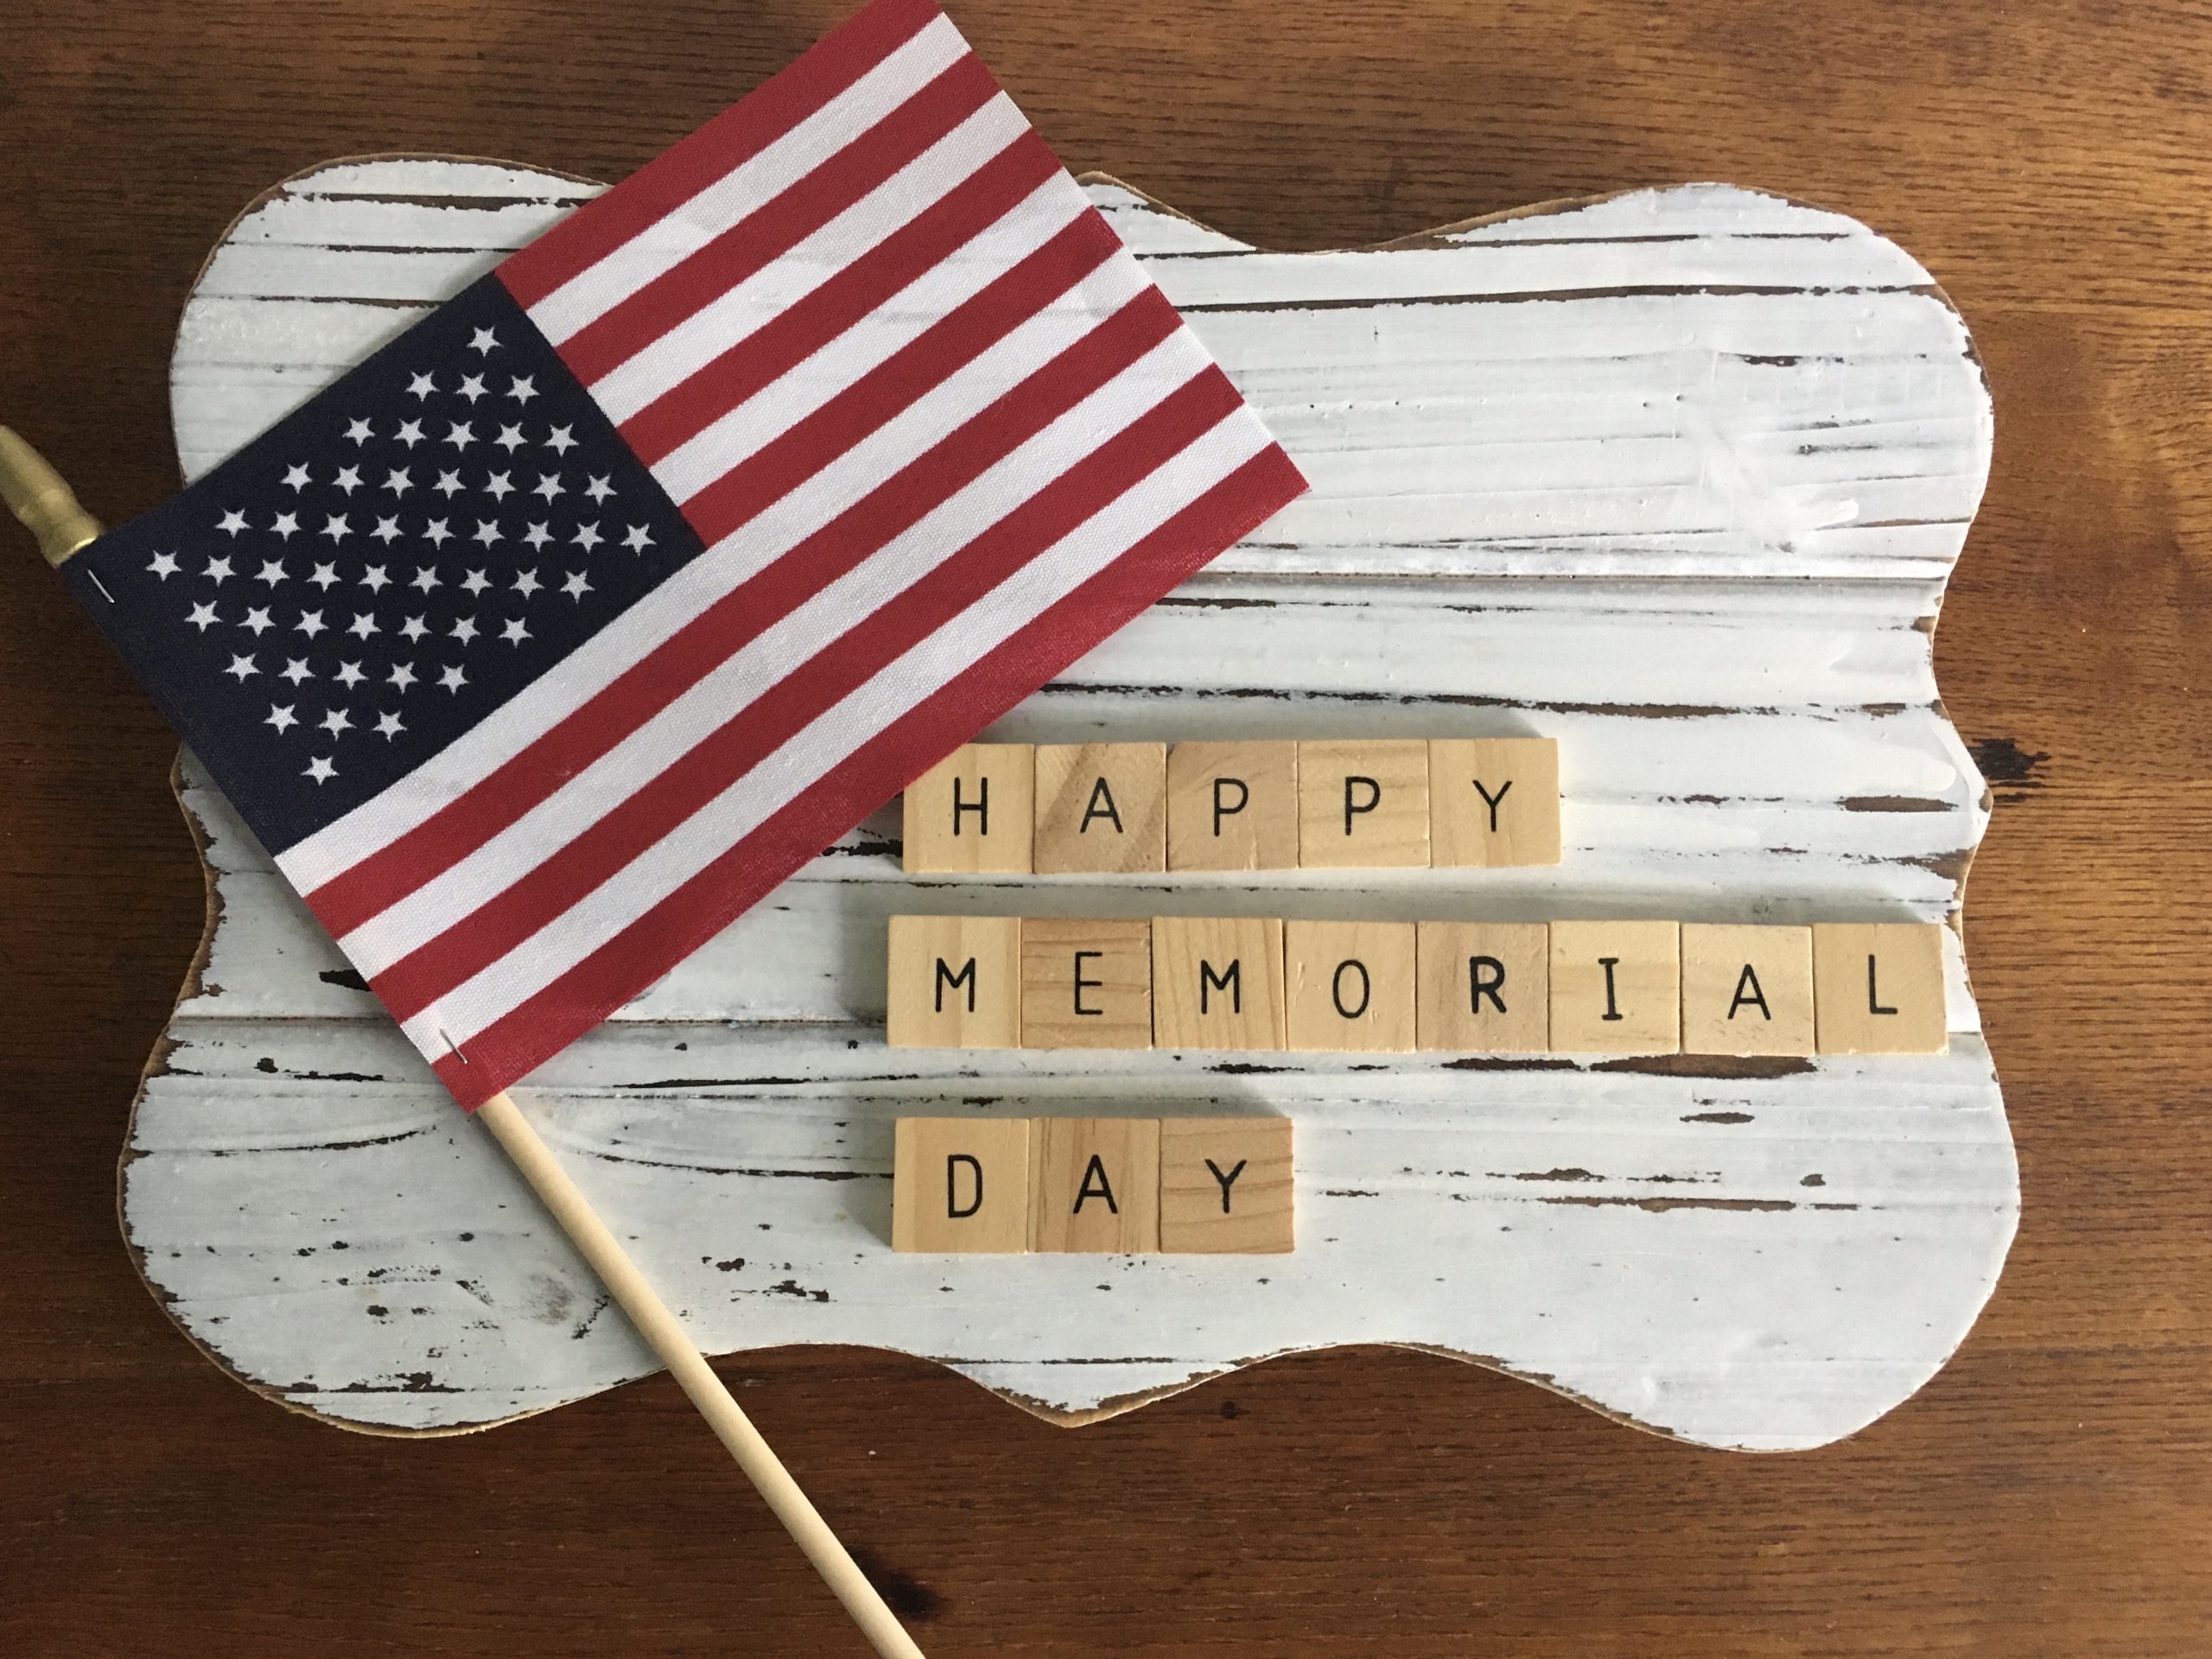 Bandera americana junto a azulejos que escriben Happy Memorial Day